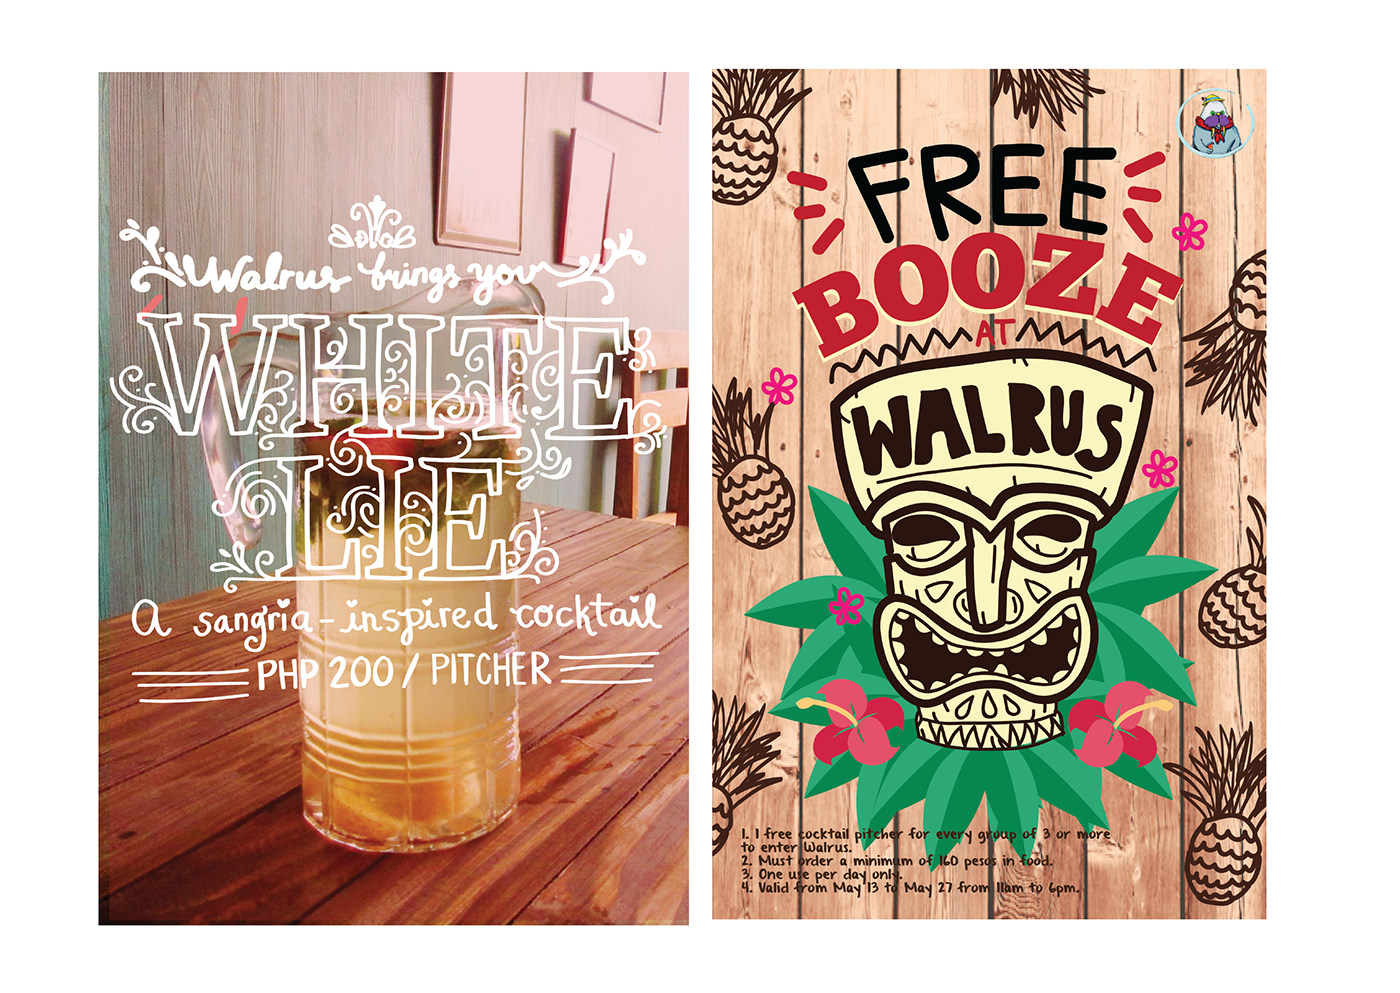 walrus beach bar katipunan promo posters Tropical Bahamas beer bar beach